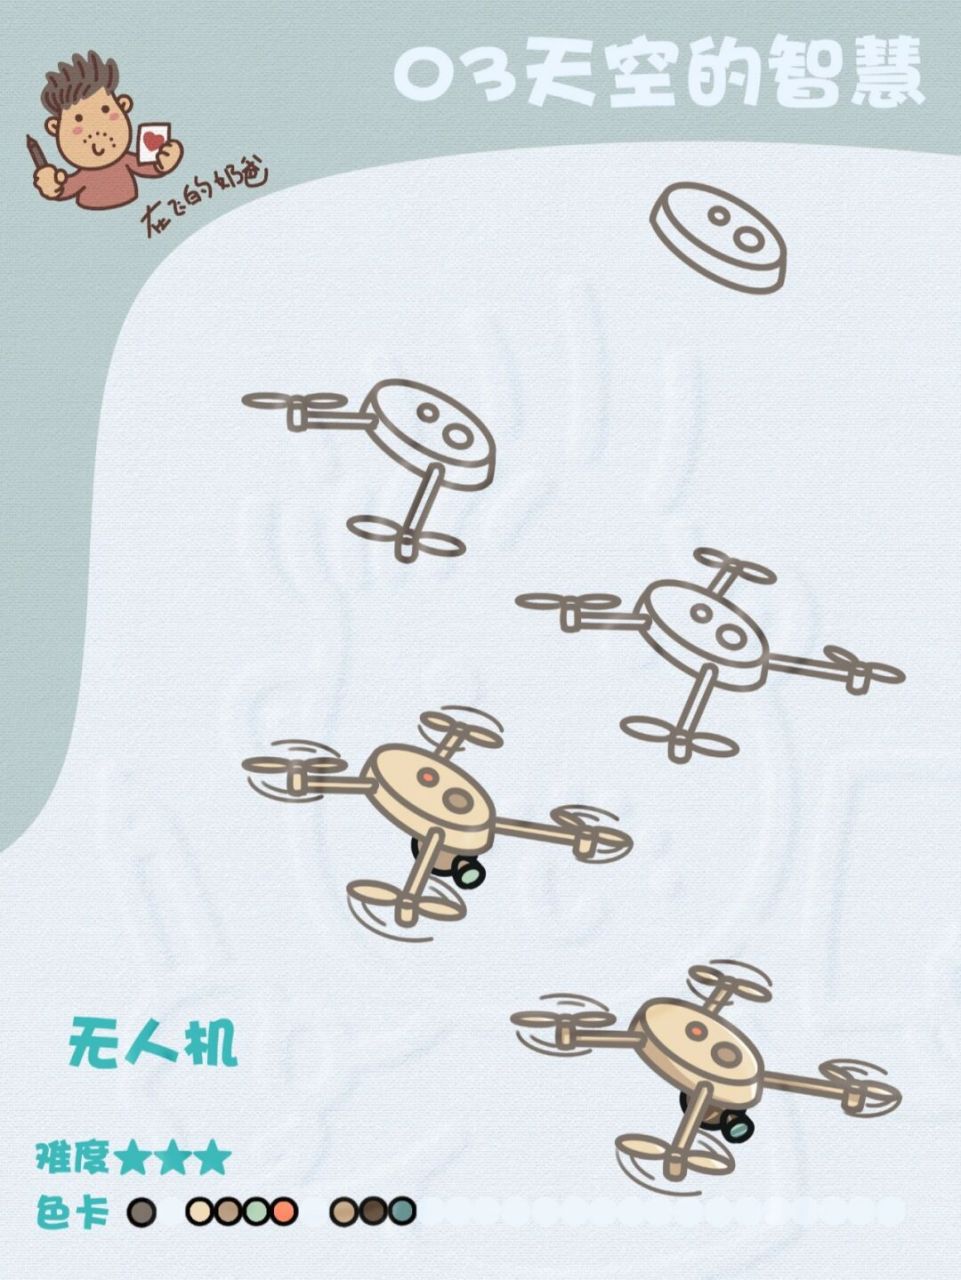 中国无人机简笔画图片